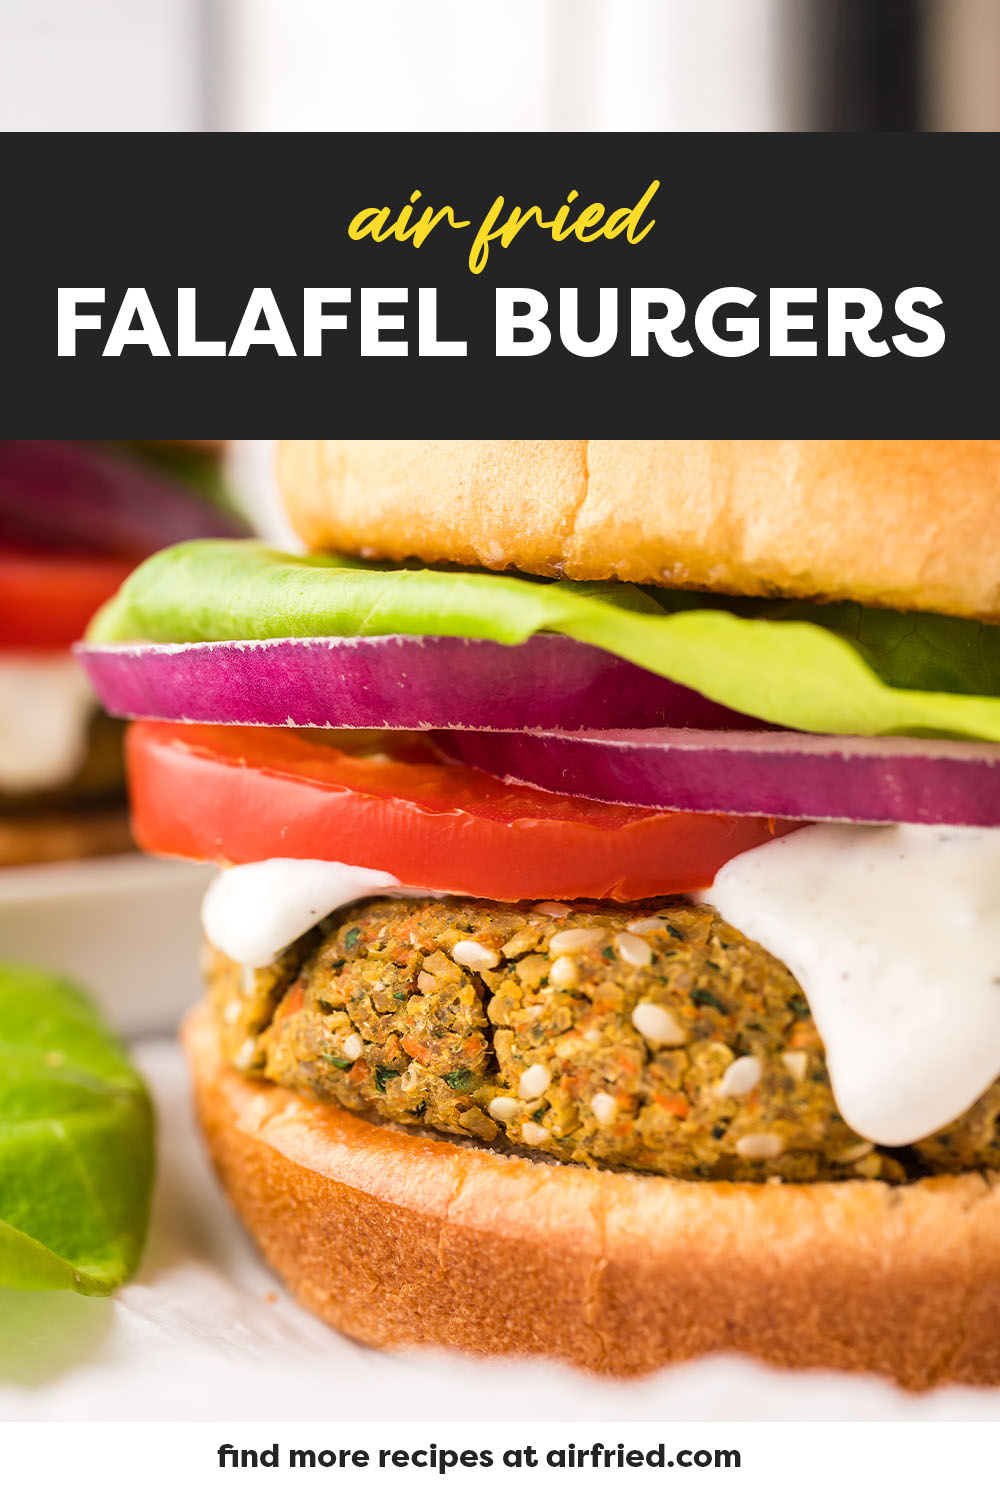 Close up image of falafel burger on bun.